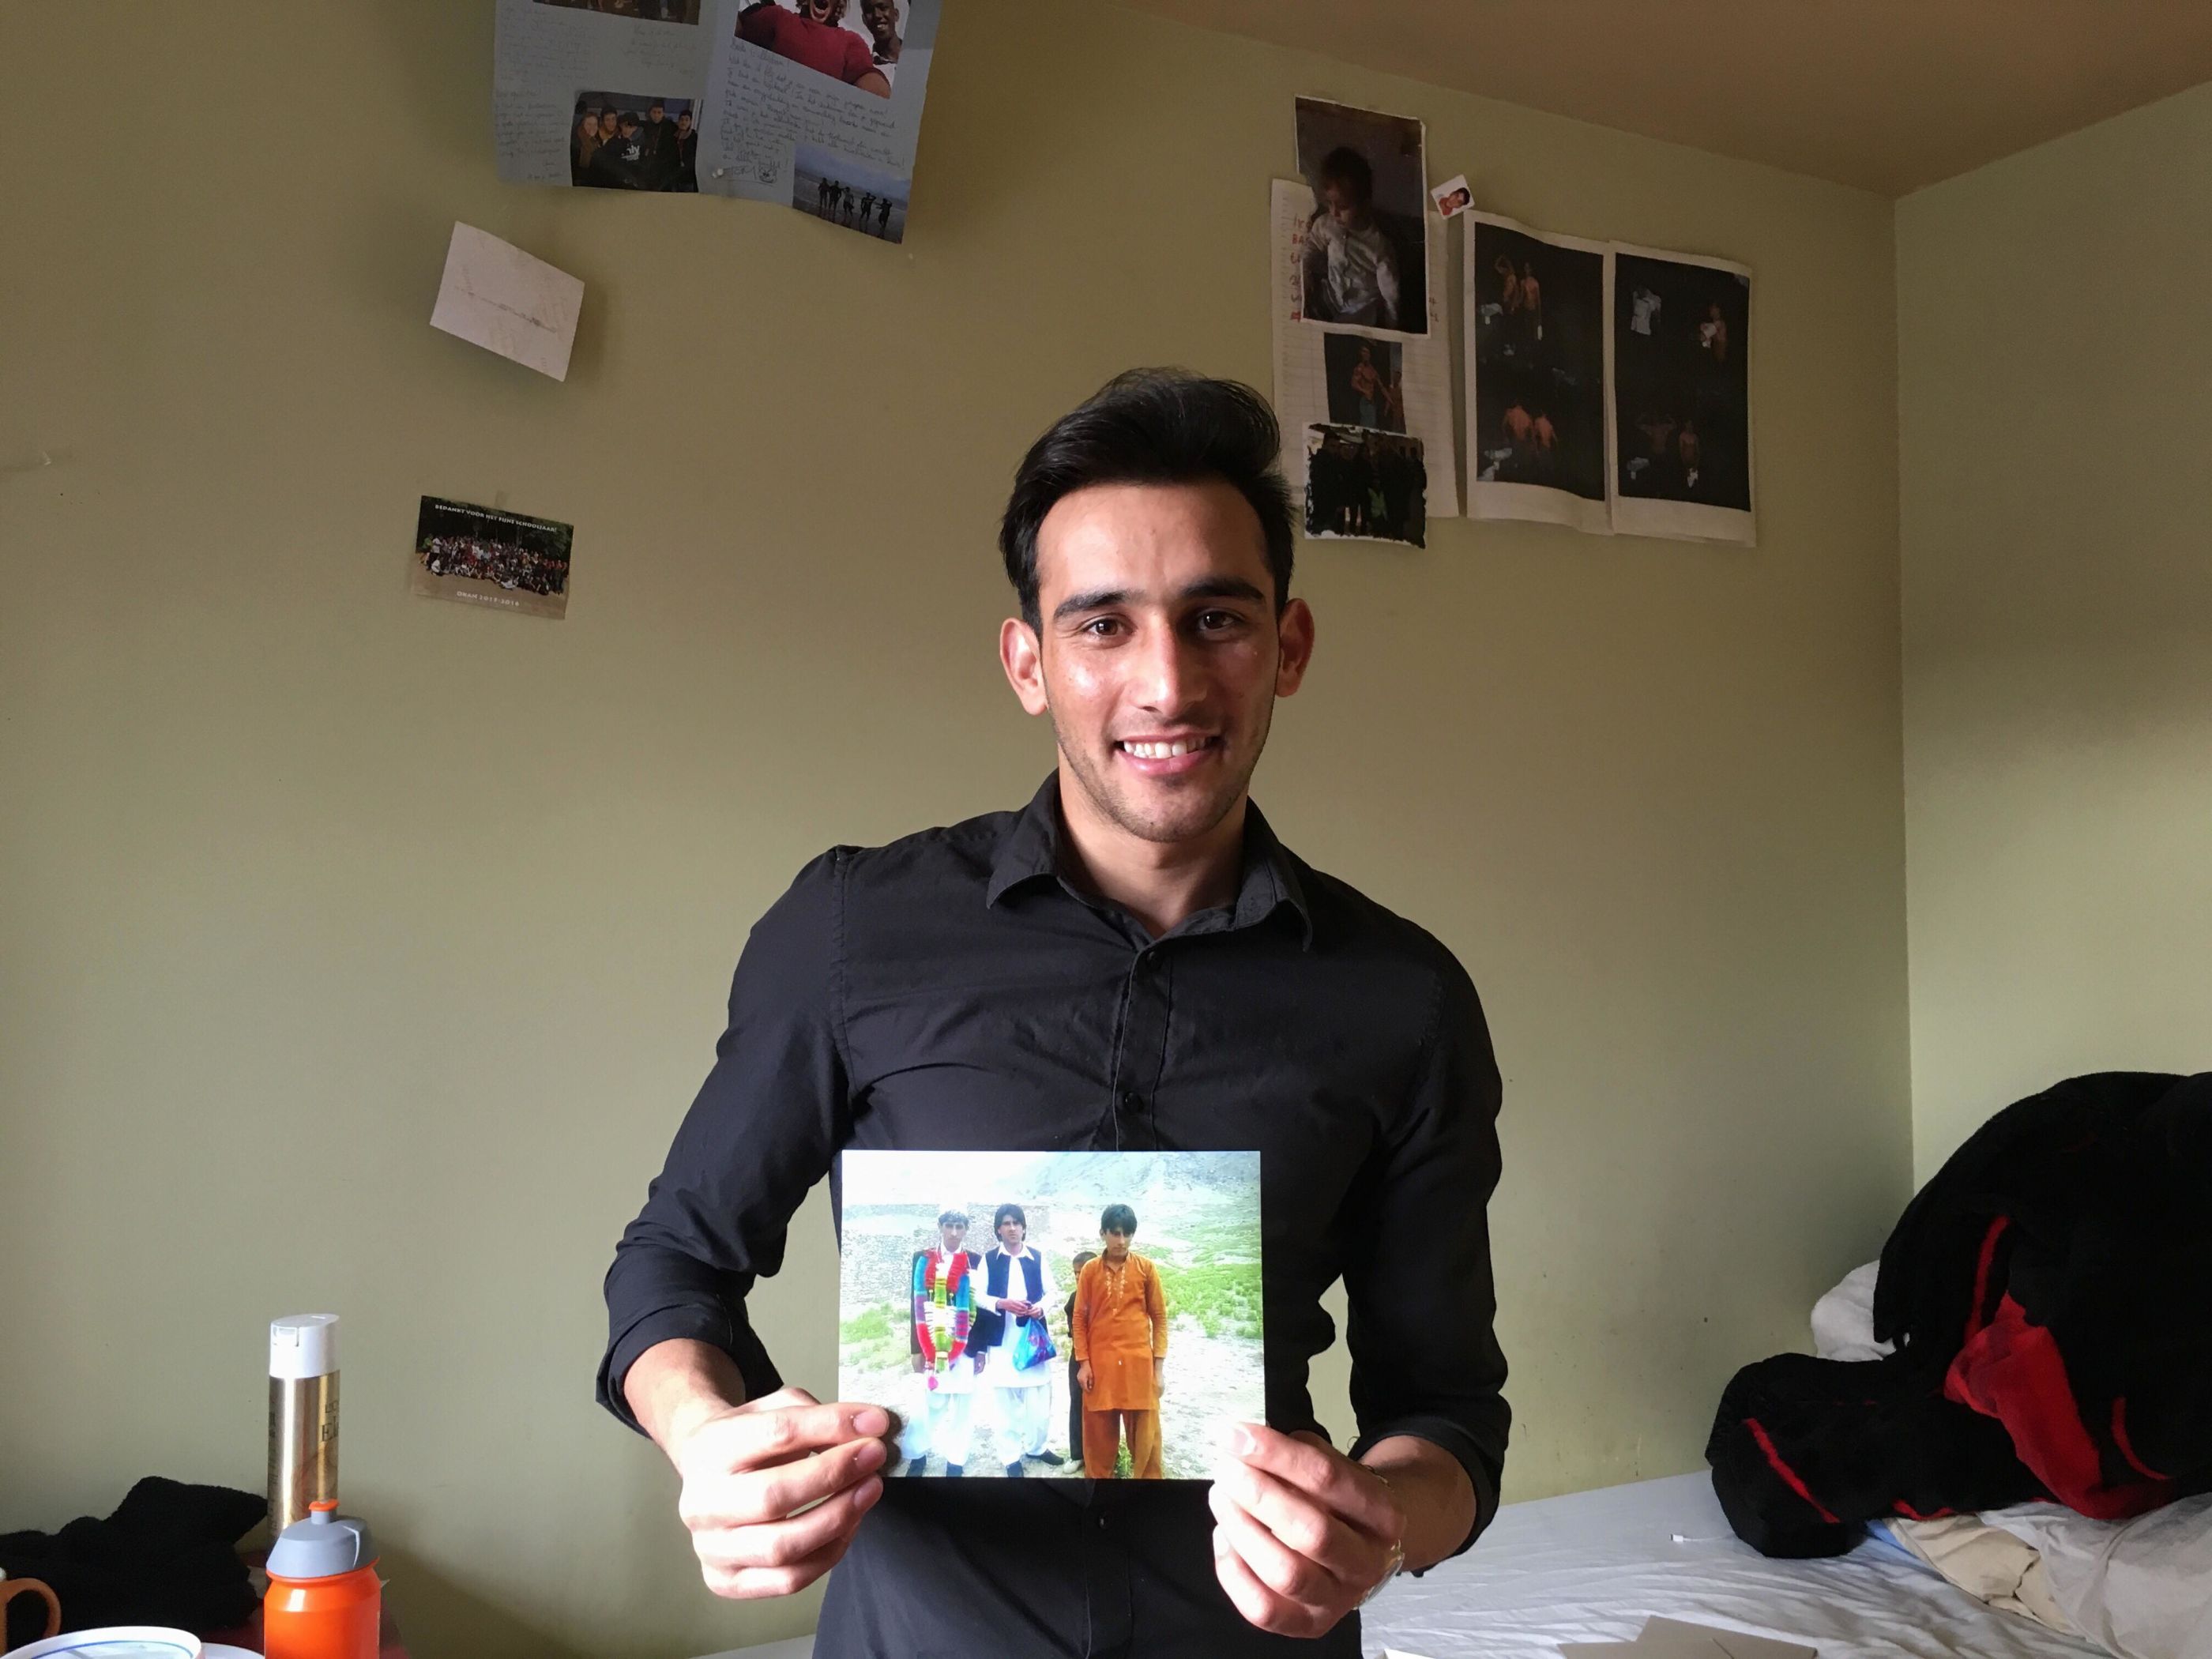 © Elise Schroons - Malistan in zijn kamer in Gent. Hier toont hij een foto van zichzelf (oranje gewaad), een neef en een vriend van hem in Afghanistan. Nu is hij 17 jaar. 